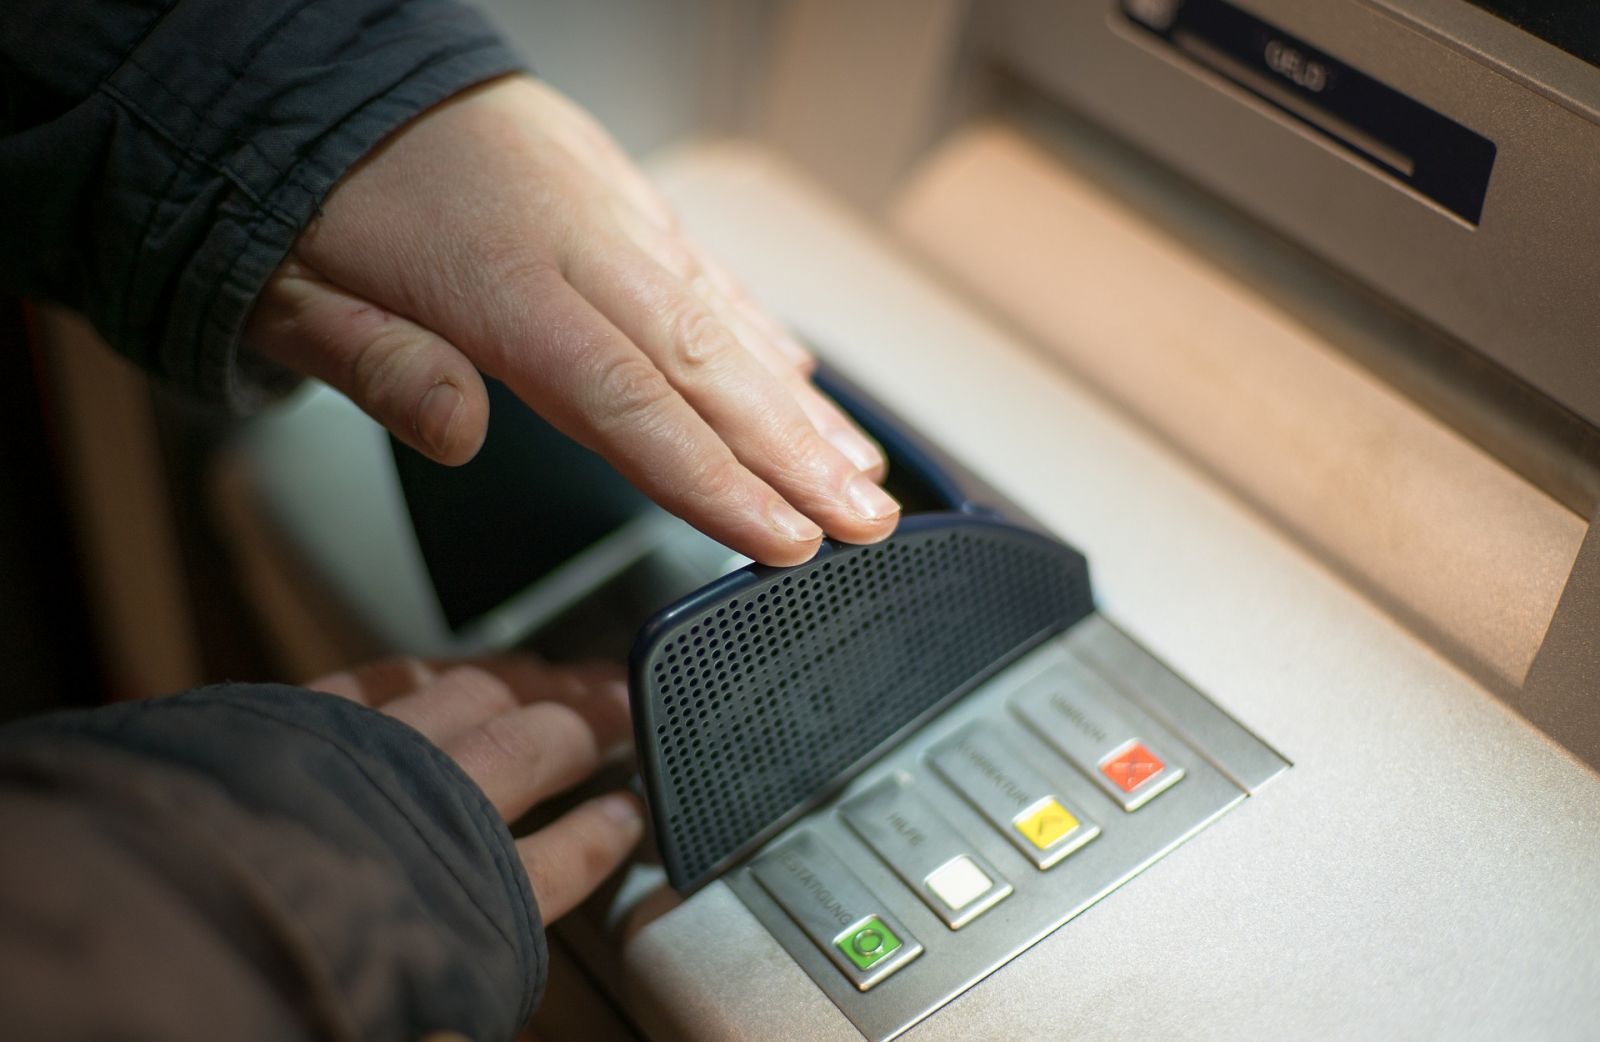 Ngân hàng Mỹ báo động vì chiêu dùng keo dán đánh cắp tiền tại ATM: Đi rút tiền mà gặp dấu hiệu này thì dừng lại ngay! - Ảnh 3.